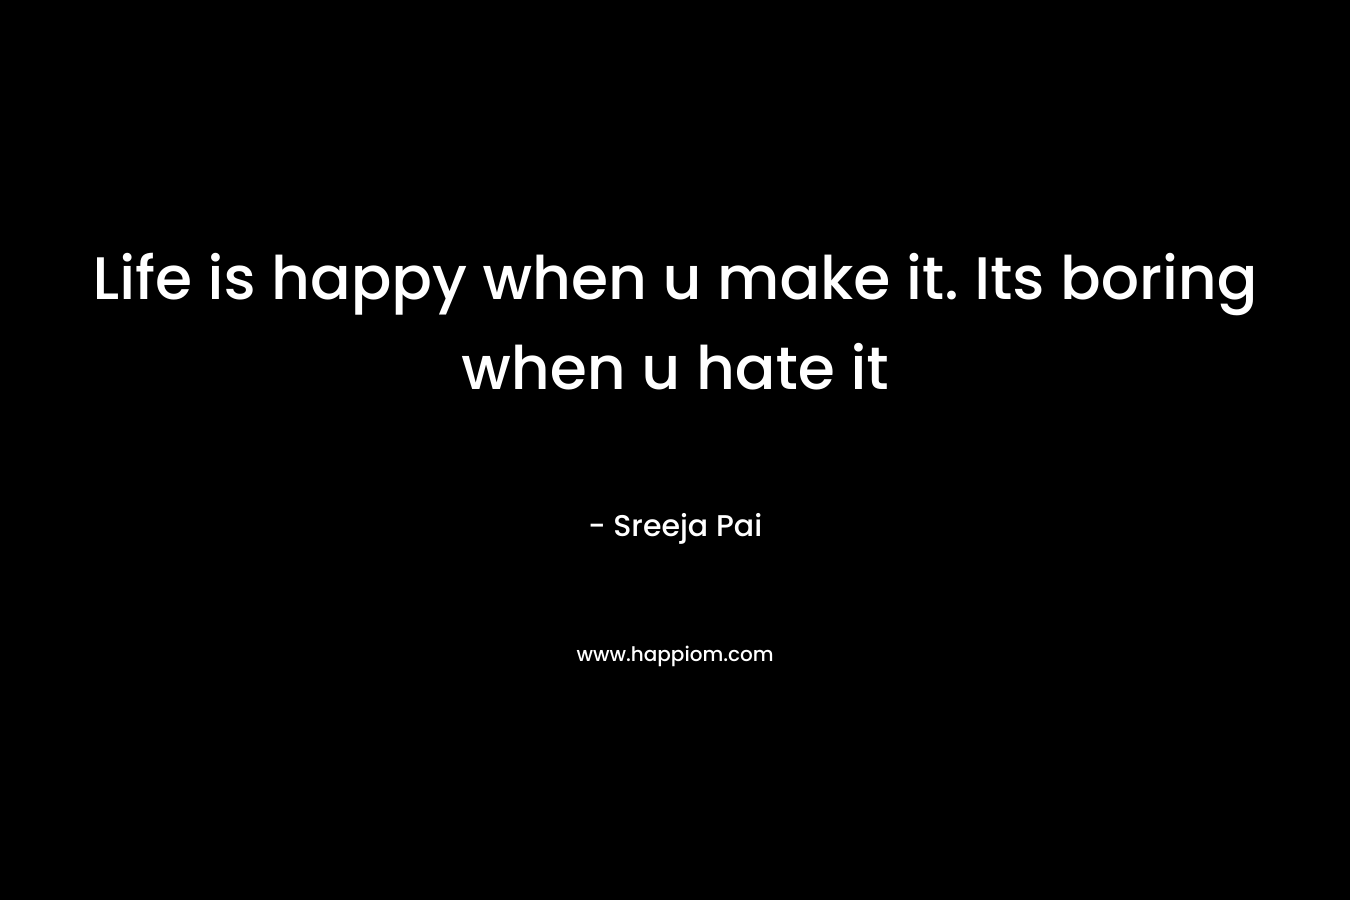 Life is happy when u make it. Its boring when u hate it